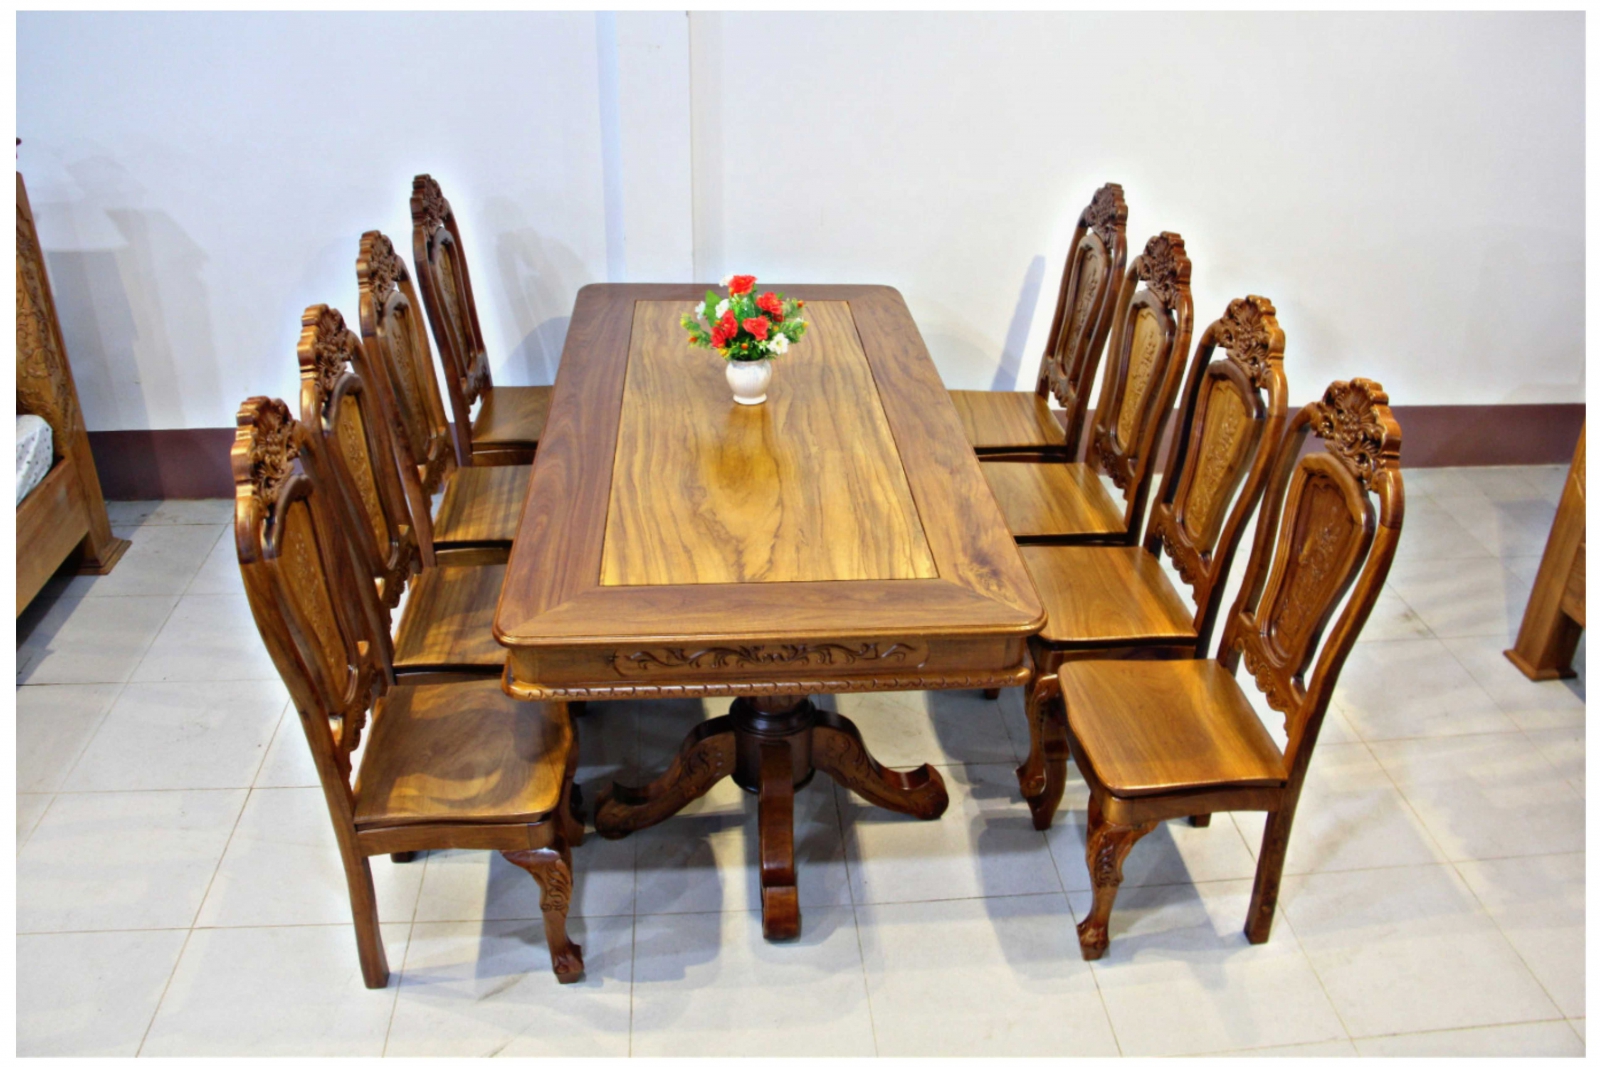 Bàn ăn gỗ đỏ cẩm xe vuông 8 ghế là tuyệt tác nghệ thuật của nghệ nhân. Với sự tinh tế trong từng chi tiết và kiểu dáng độc đáo, sản phẩm này sẽ khiến bạn bị mê hoặc bởi sự đẹp và sang trọng của nó. Nhấn vào hình ảnh để khám phá sự tài hoa và sự hiện đại của sản phẩm này.